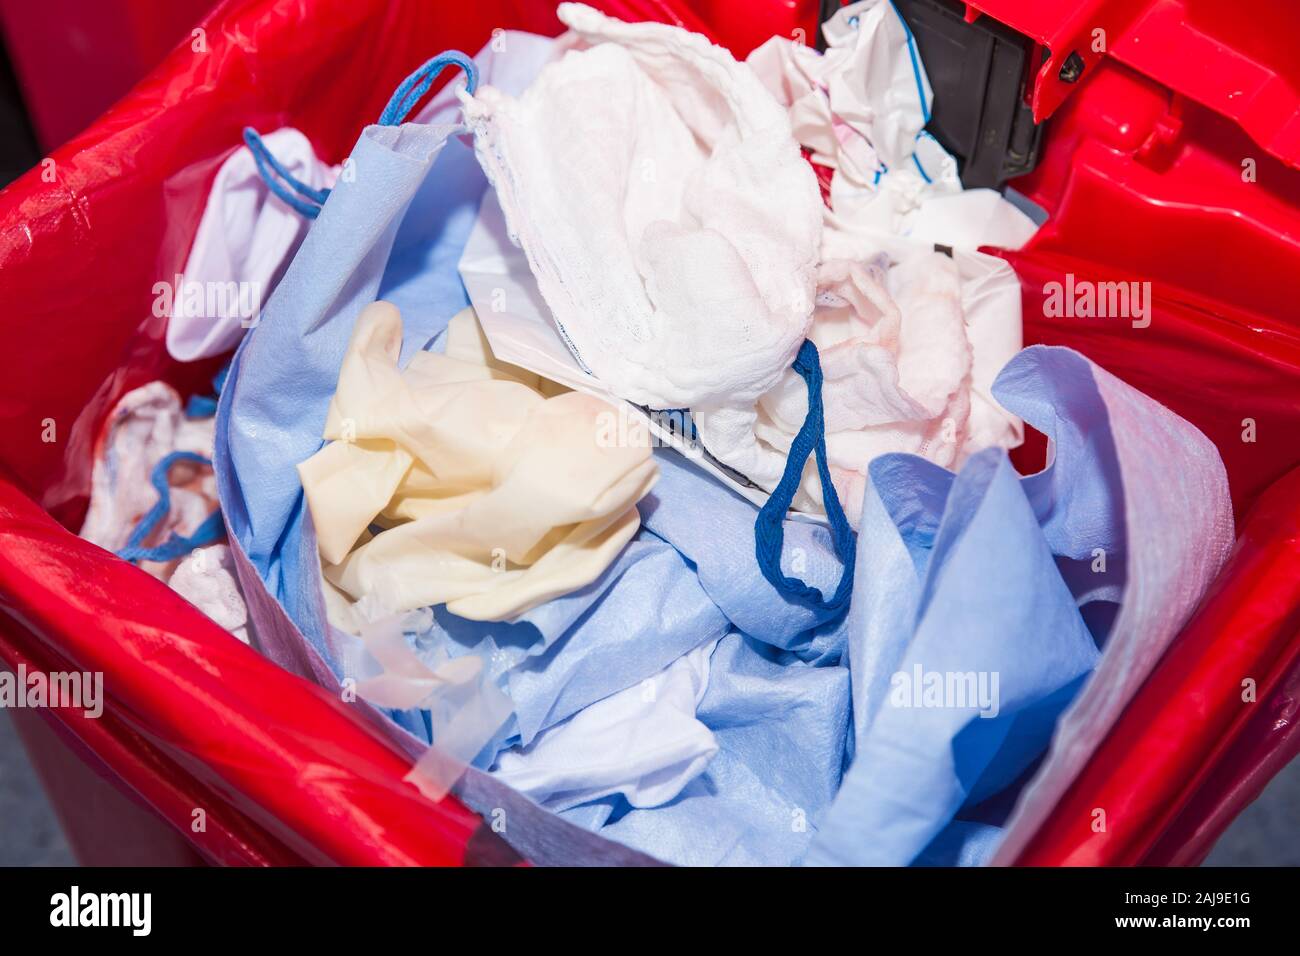 Riesgo biológico los desechos vertidos en la bolsa de basura roja en un quirófano de un hospital Foto de stock